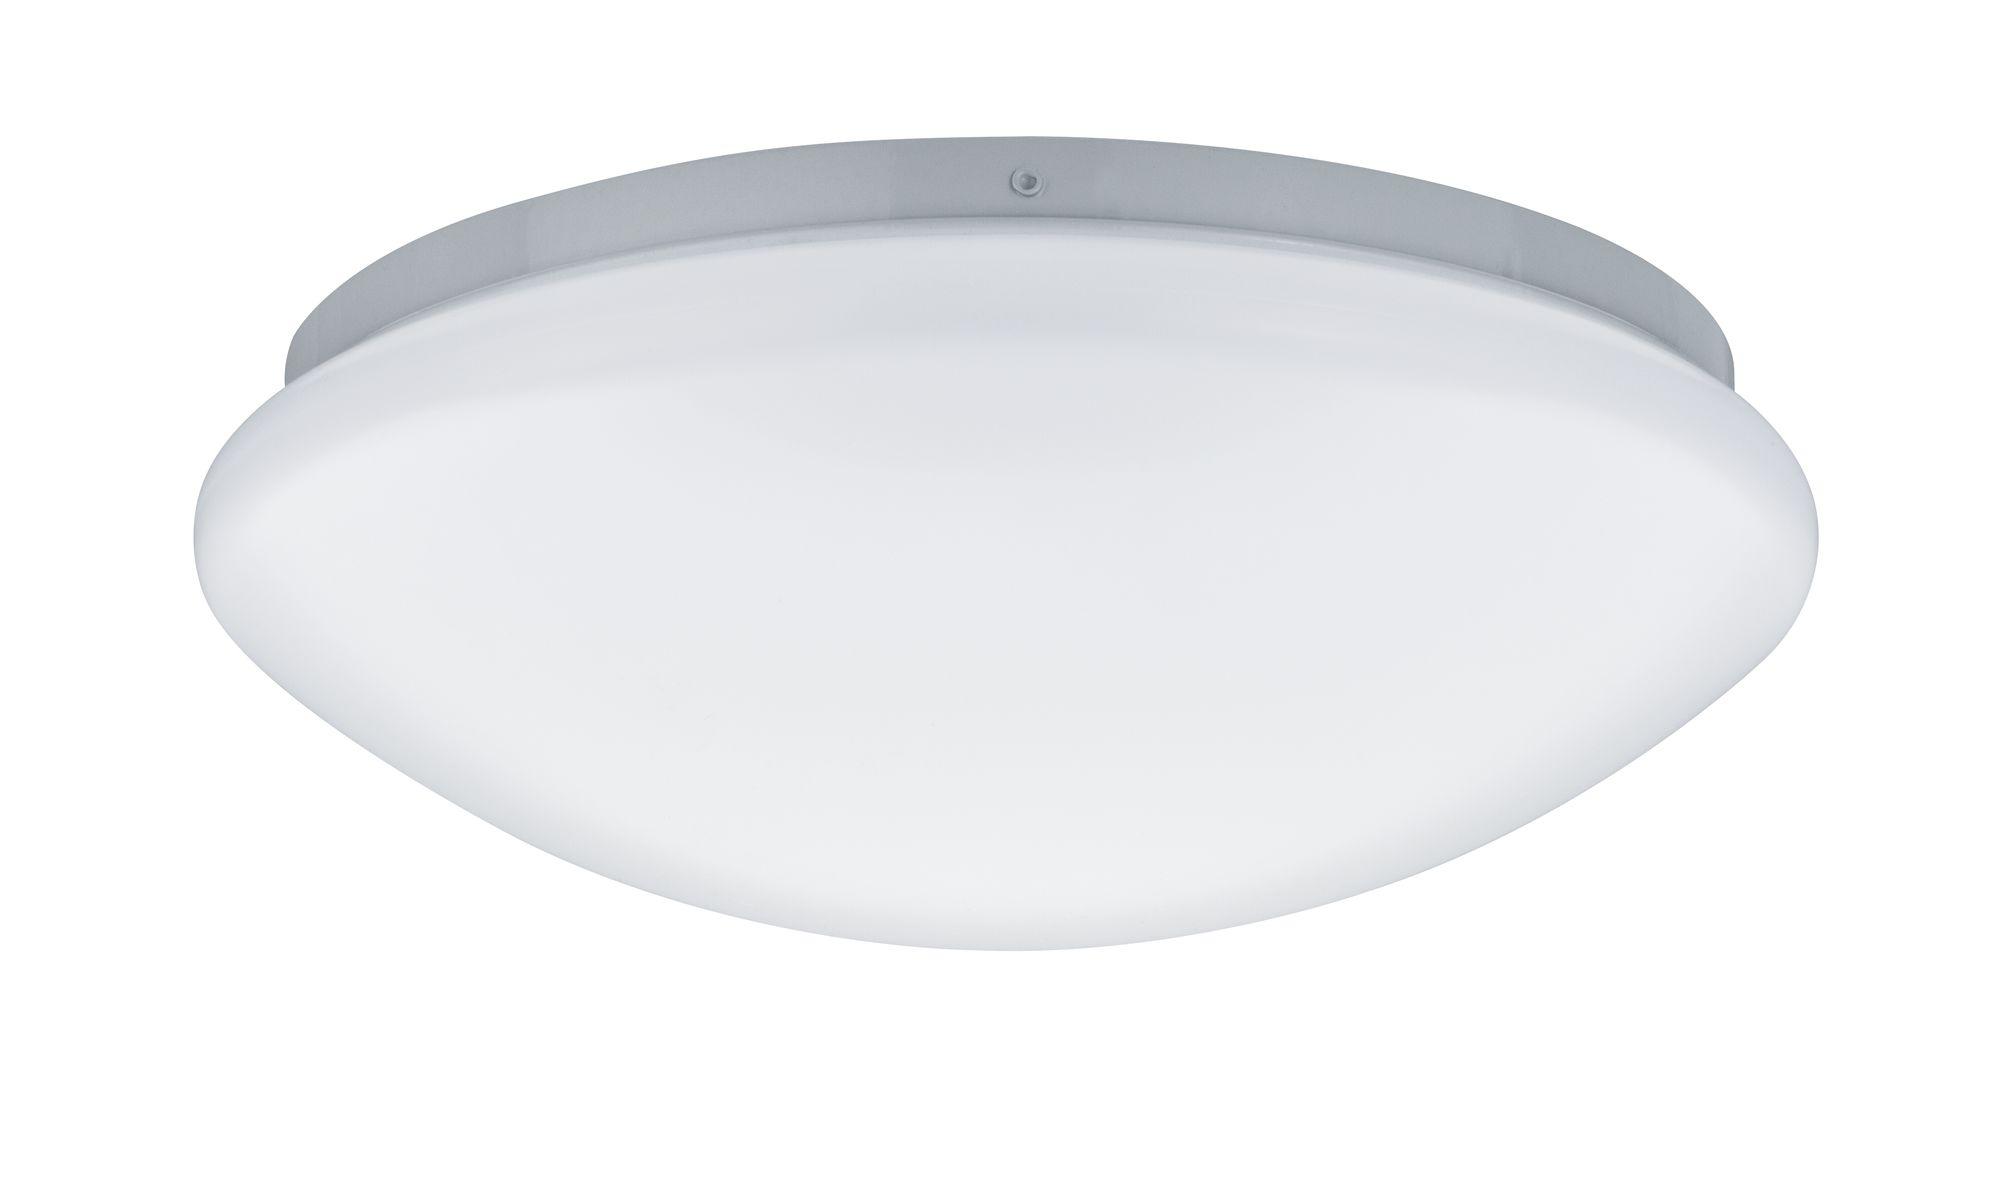 Stropní svítidlo LED Leonis kruhové 10W teplá bílá - PAULMANN